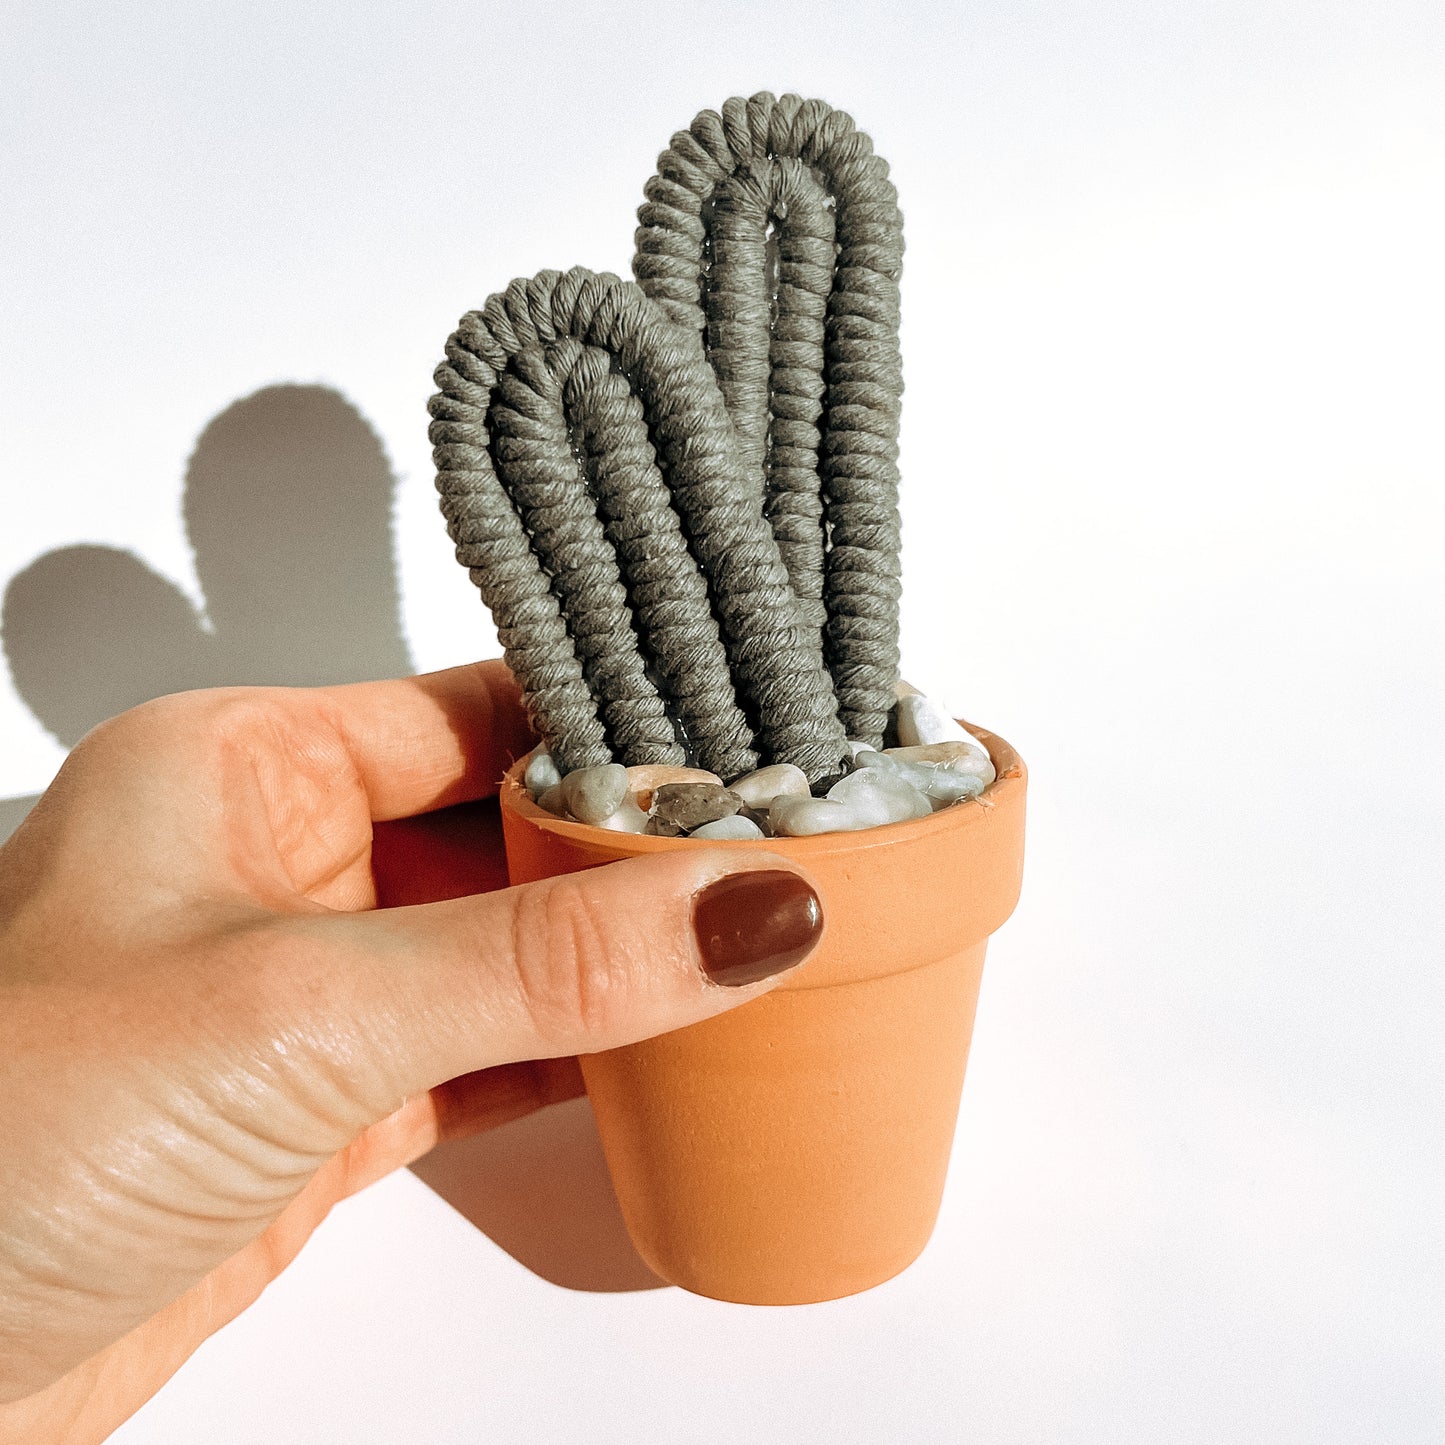 Macramé Cactus